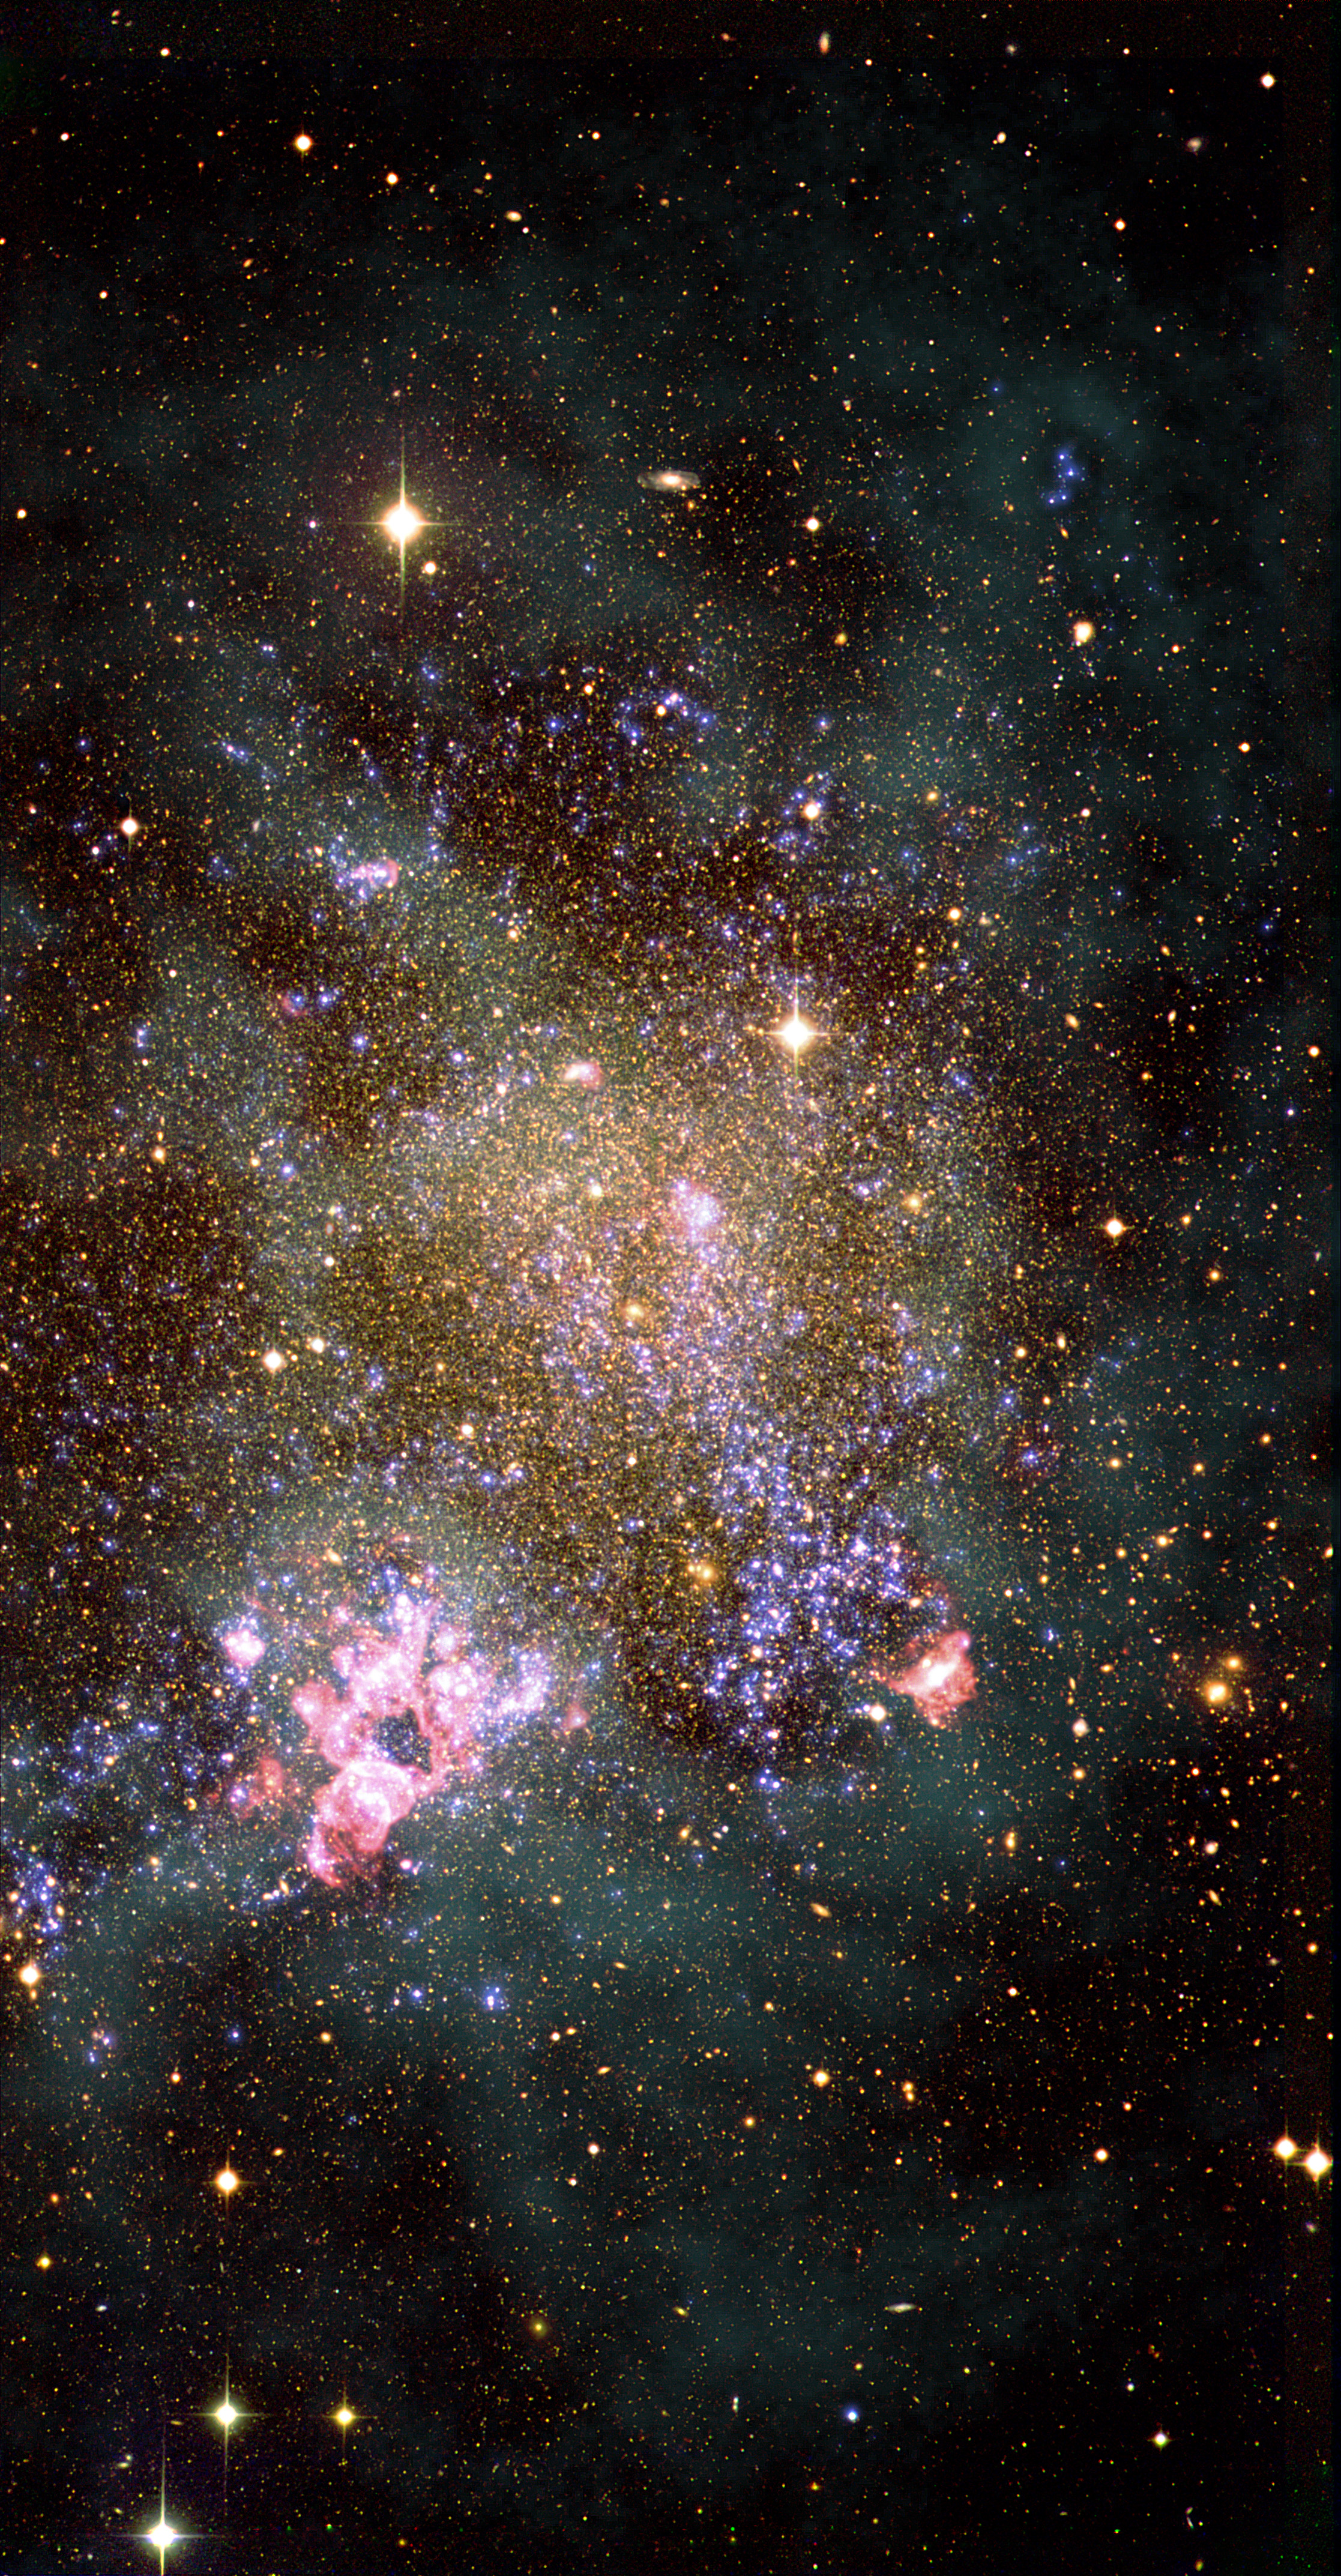 La galaxia IC1613 es una especie de Isla del Tesoro para los estudiosos de las estrellas masivas. Esta galaxia irregular enana todavía está formando estrellas, y descubrimos nuevas estrellas masivas con cada apuntado del GTC. Estos objetos experimentan altas temperaturas en su juventud y somos capaces de detectarlos con telescopios espaciales en el rango UV, lo que se refleja en los colores azules de la imagen. IC1613 tiene una reserva de gas hidrógeno neutro, la materia prima de donde se forman las estrellas, y que en la imagen vemos como una nube blanquecina. Las estrellas masivas jóvenes son capaces de ionizar la nube de hidrógeno en la que se formaron, y forman las burbujas rojizas que se ven en toda la imagen y su variante más espectacular en la parte inferior izquierda de la galaxia. IC1613 se ha convertido en foco de atención en los últimos años por su composición química, mucho más parecida a la del Universo primitivo que la de la Vía Láctea. A través del estudio de las estrellas masivas en IC1613, nos acercaremos un paso más a saber cómo eran las primeras estrellas del Universo.  CRÉDITOS: G. Pérez (SMM-IAC) y M. García (IAC). Imagen elaborada con datos de los telescopios WHT, GALEX y VLA.